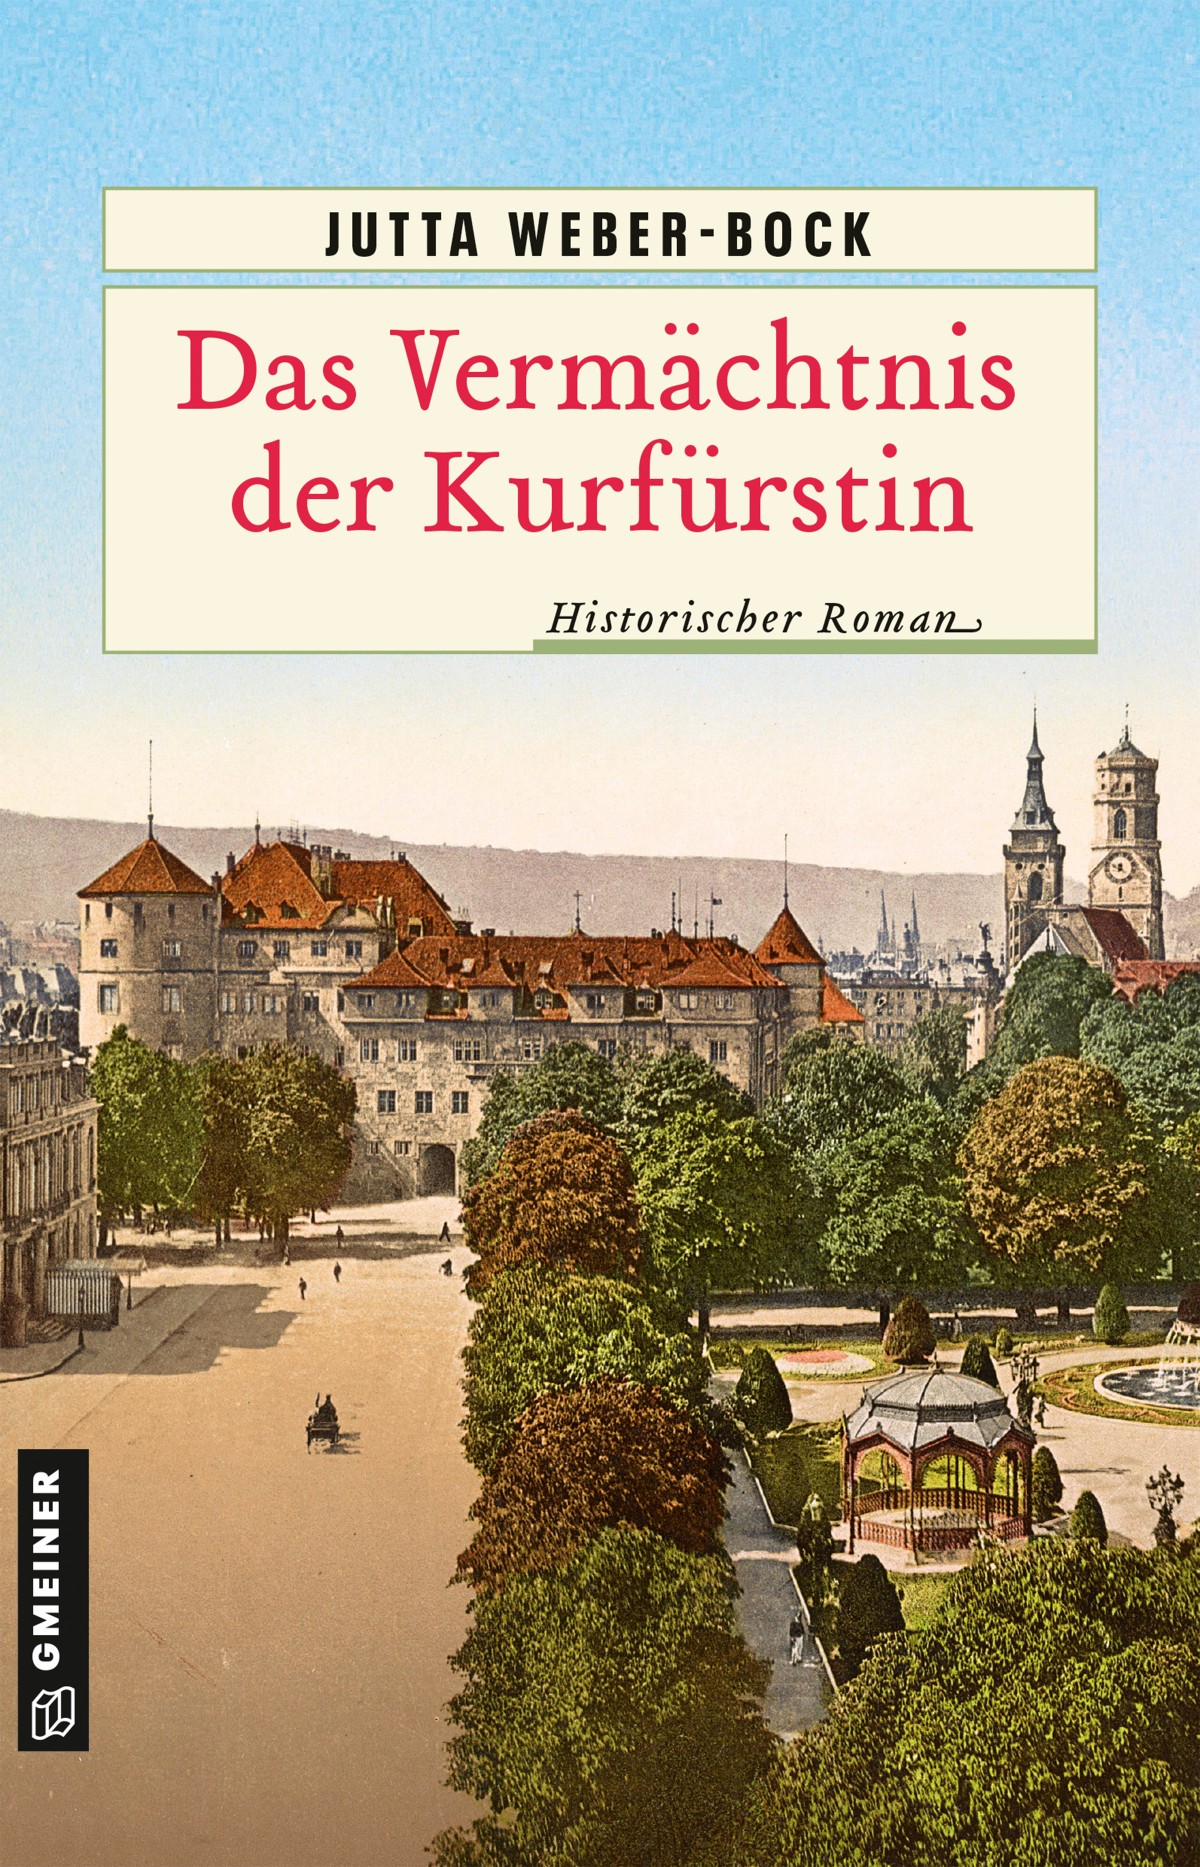 19.09.22 20 Uhr – Stadtbücherei Metzingen: Jutta Weber-Bock liest aus “Das Vermächtnis der Kurfürstin”